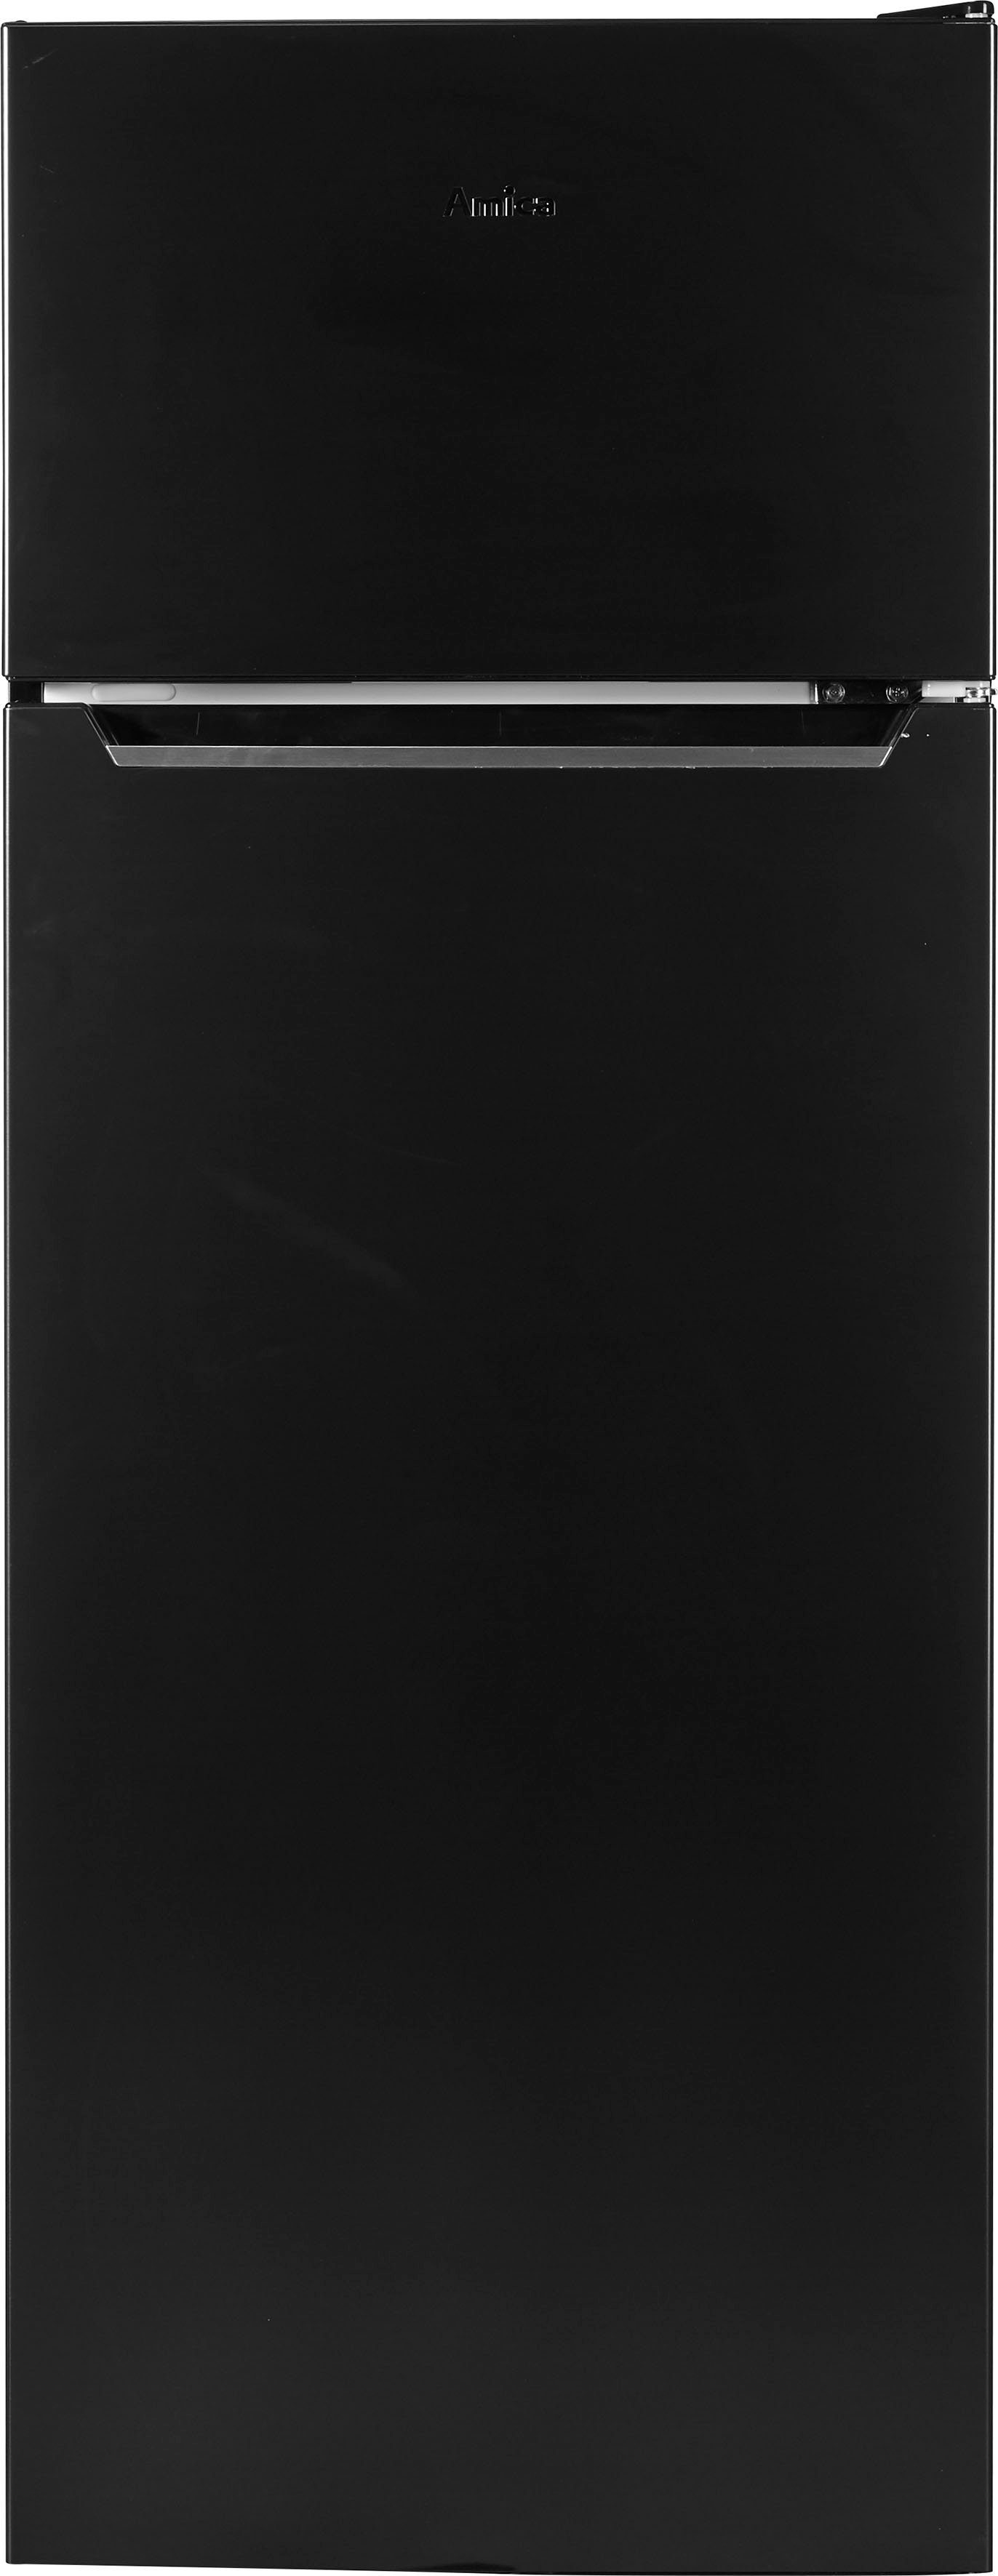 Kühl-/Gefrierkombination Edelstahl hoch, 374 160 DT 54 cm cm schwarzes 144 breit S, Amica